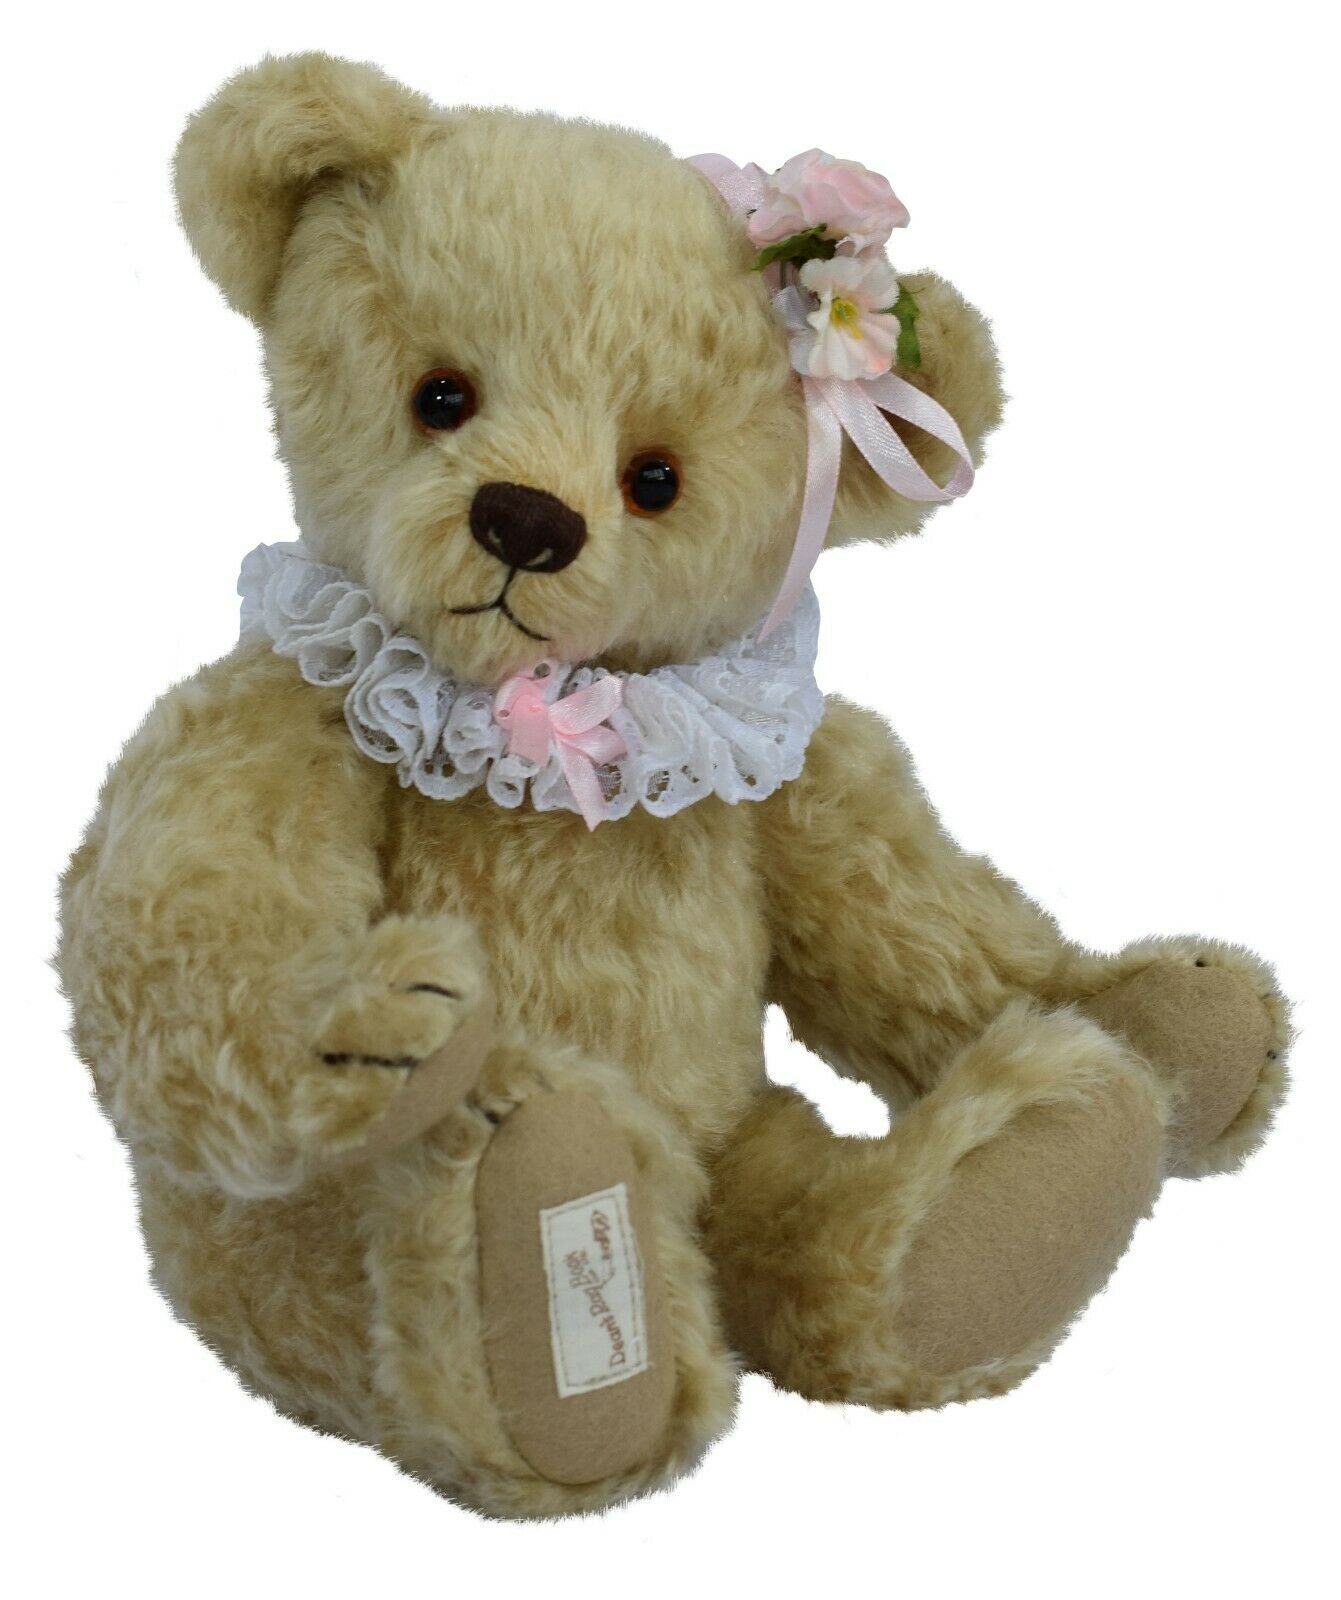 DEAN'S Teddy Sally-Anne 19.005.030 Mohair beige - Limited Edition 299 Exemplare - für Sammler